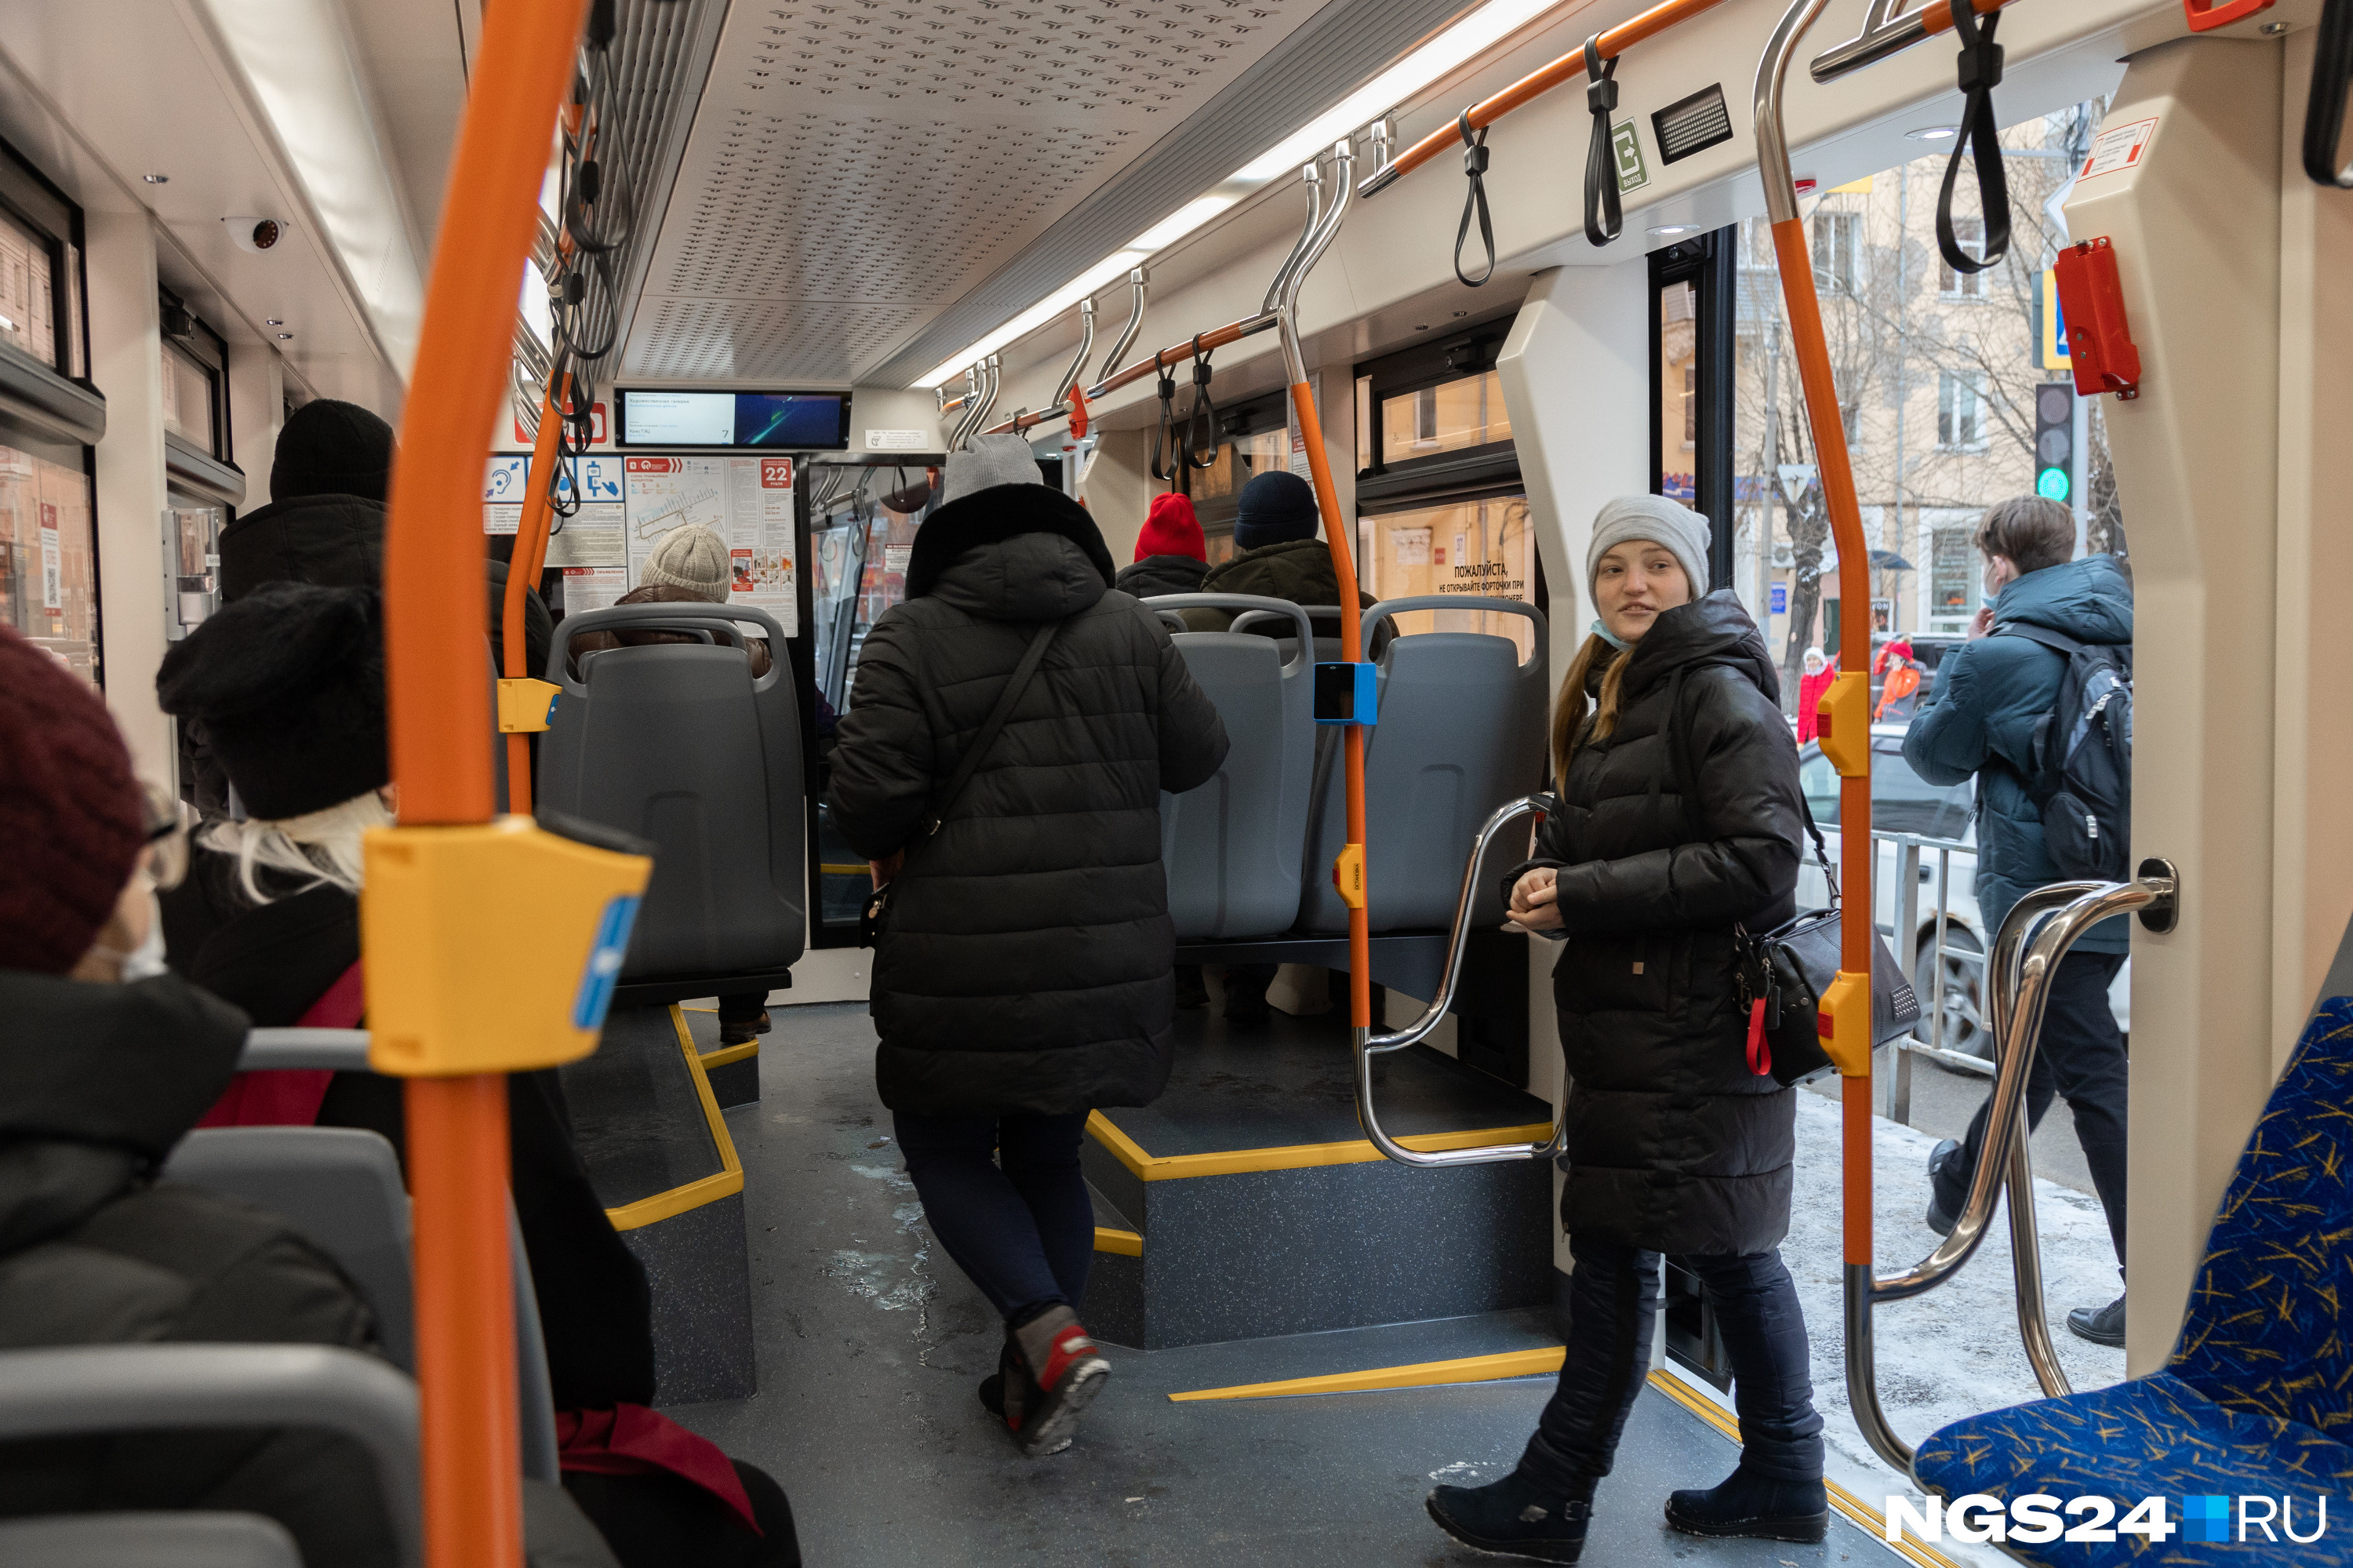 Пассажиры заходят в трамваи, как в музей — всё внимательно рассматривают